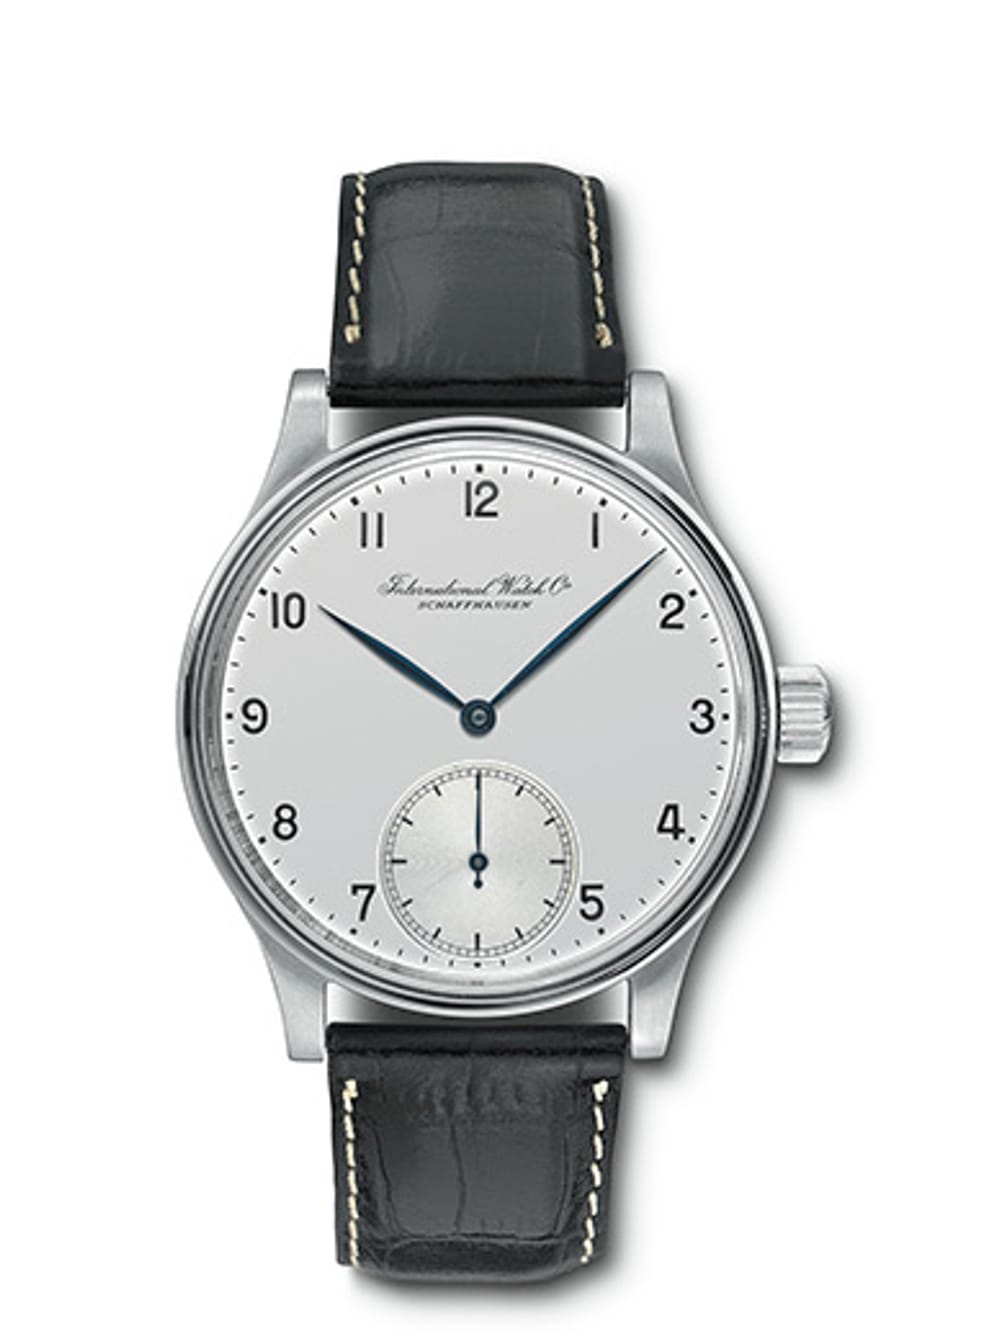 Die IWC Portugieser aus dem Jahr 1942 ist durch die extrem hohe Präzision ihres Uhrwerks berühmt geworden. Bei Auktionen erzielen Originaluhren hohe Preise von etwa 80.000 Euro. Die Reihe wird bis heute mit neuen Modellen weitergeführt.